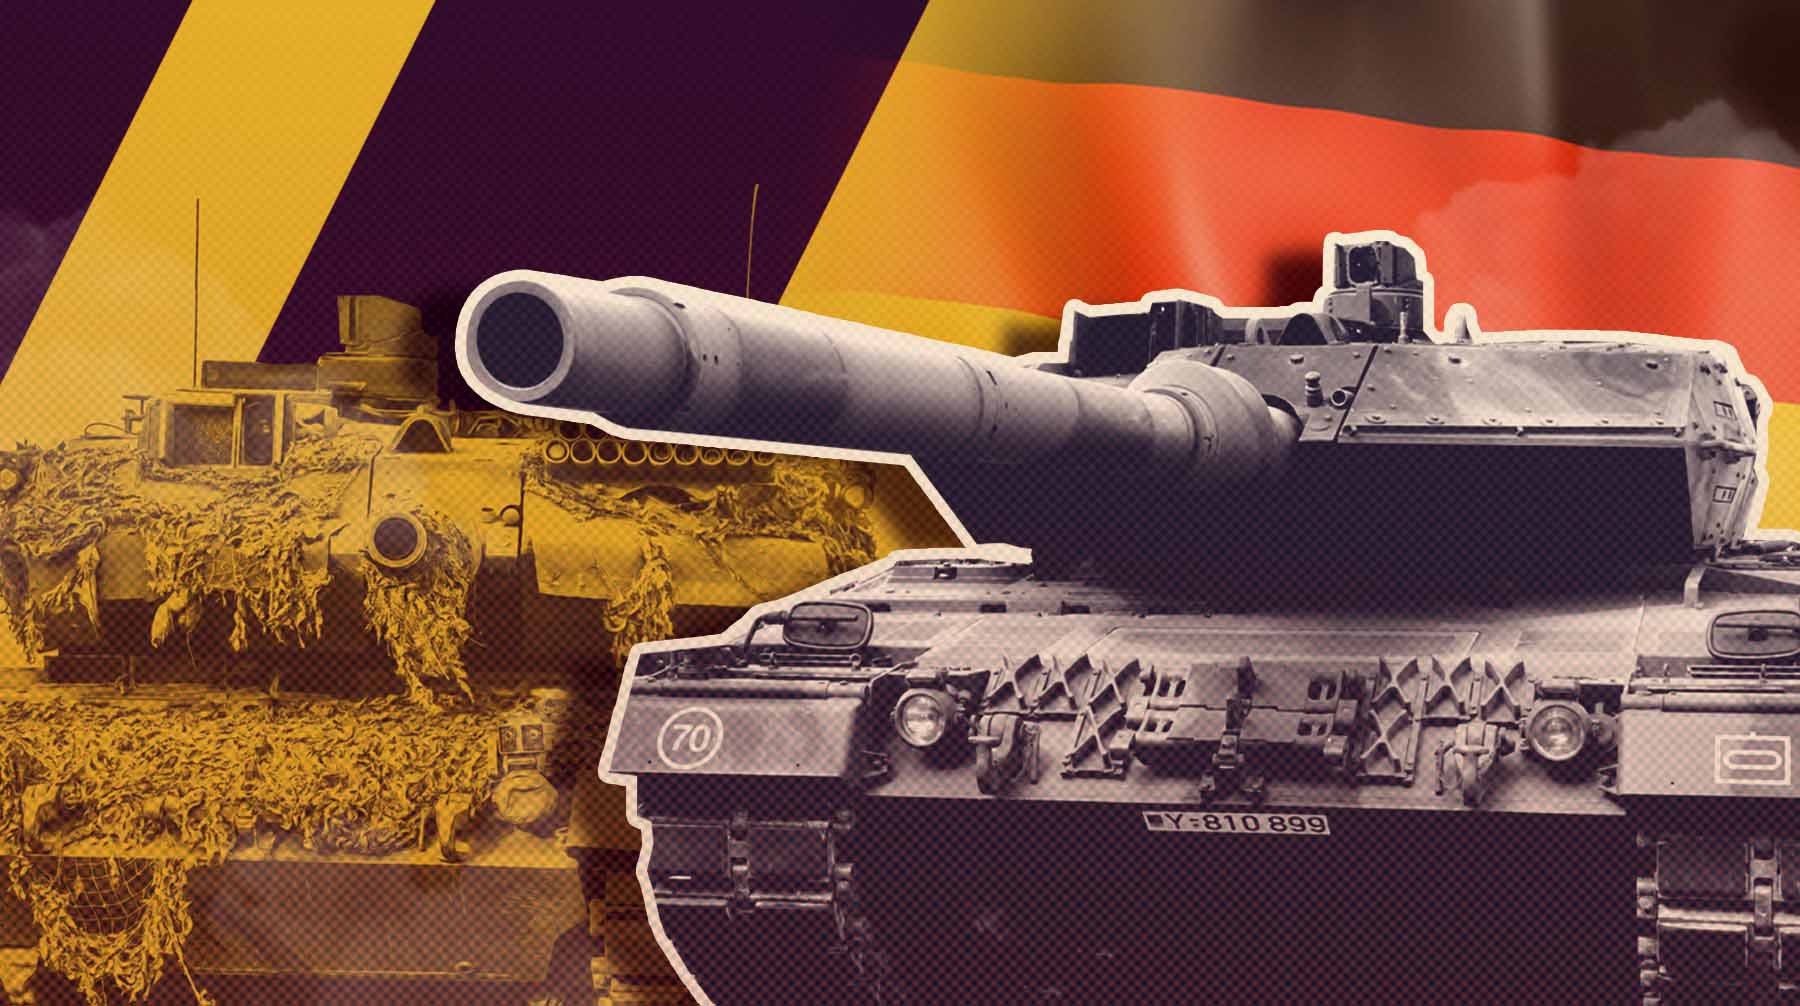 Dailystorm - В РАН заявили, что министром обороны Германии может стать «ястреб» из бундестага, а «Леопарды» в любом случае передадут ВСУ